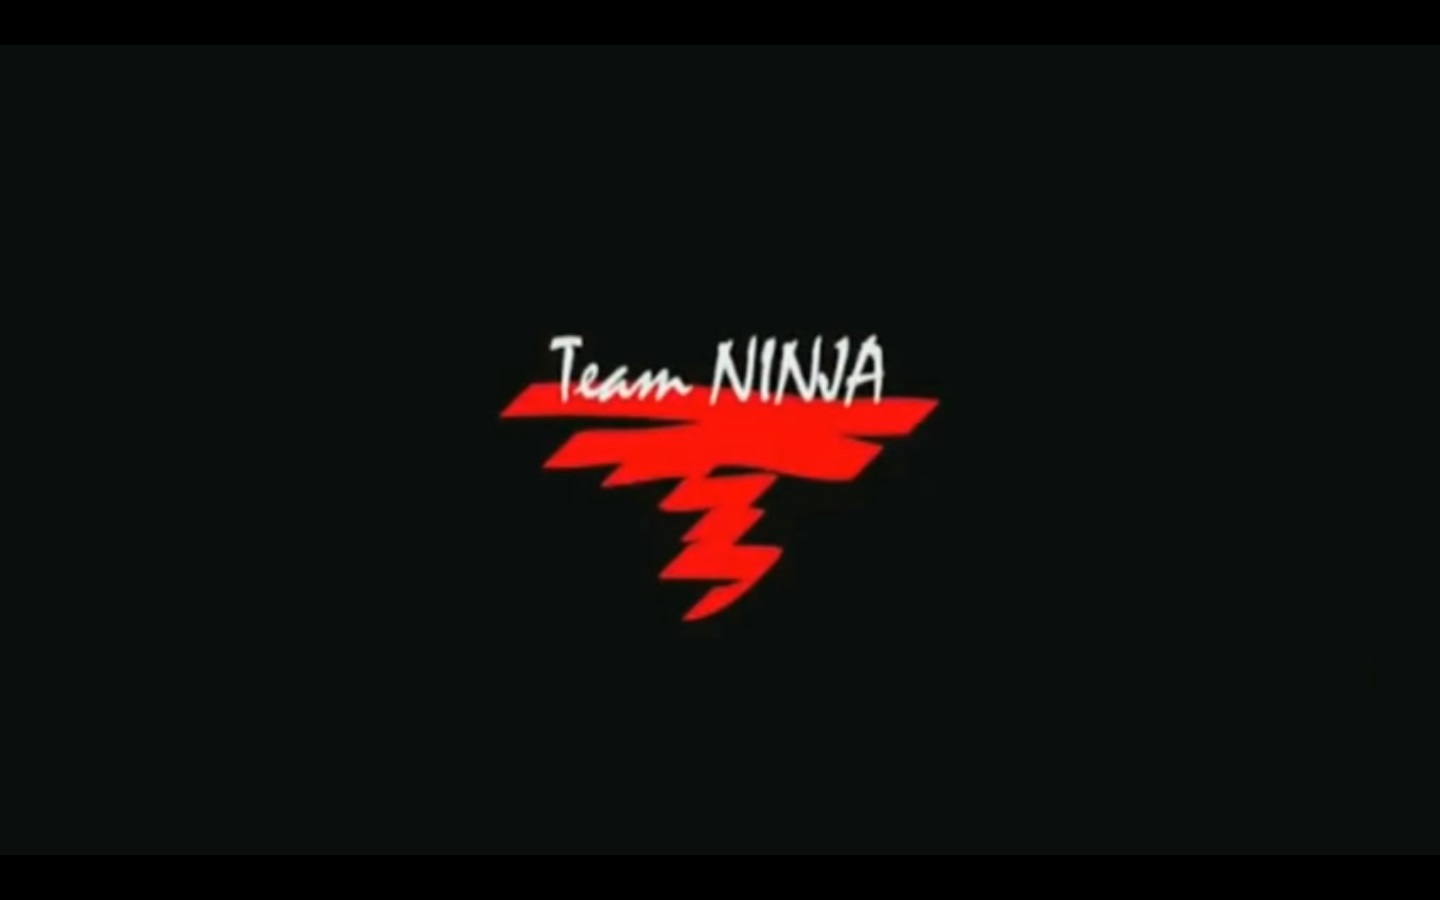 Il producer di Bloodborne si unisce a Team Ninja